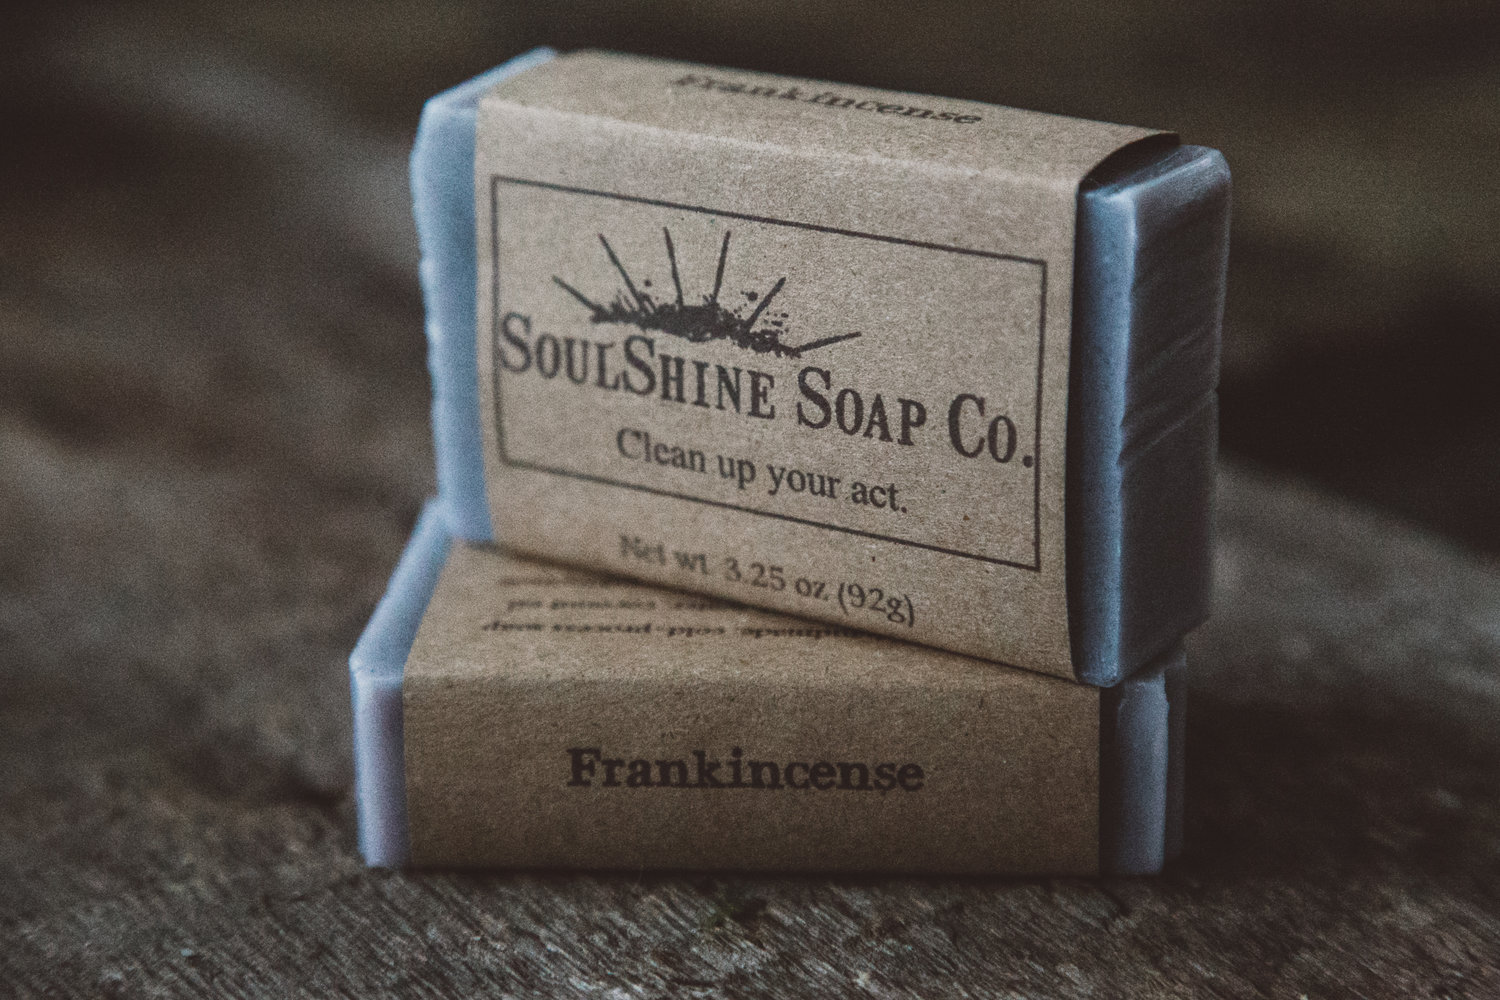 Frankincense 15 ml. Pure Essential Oil - Georgia Soap Company